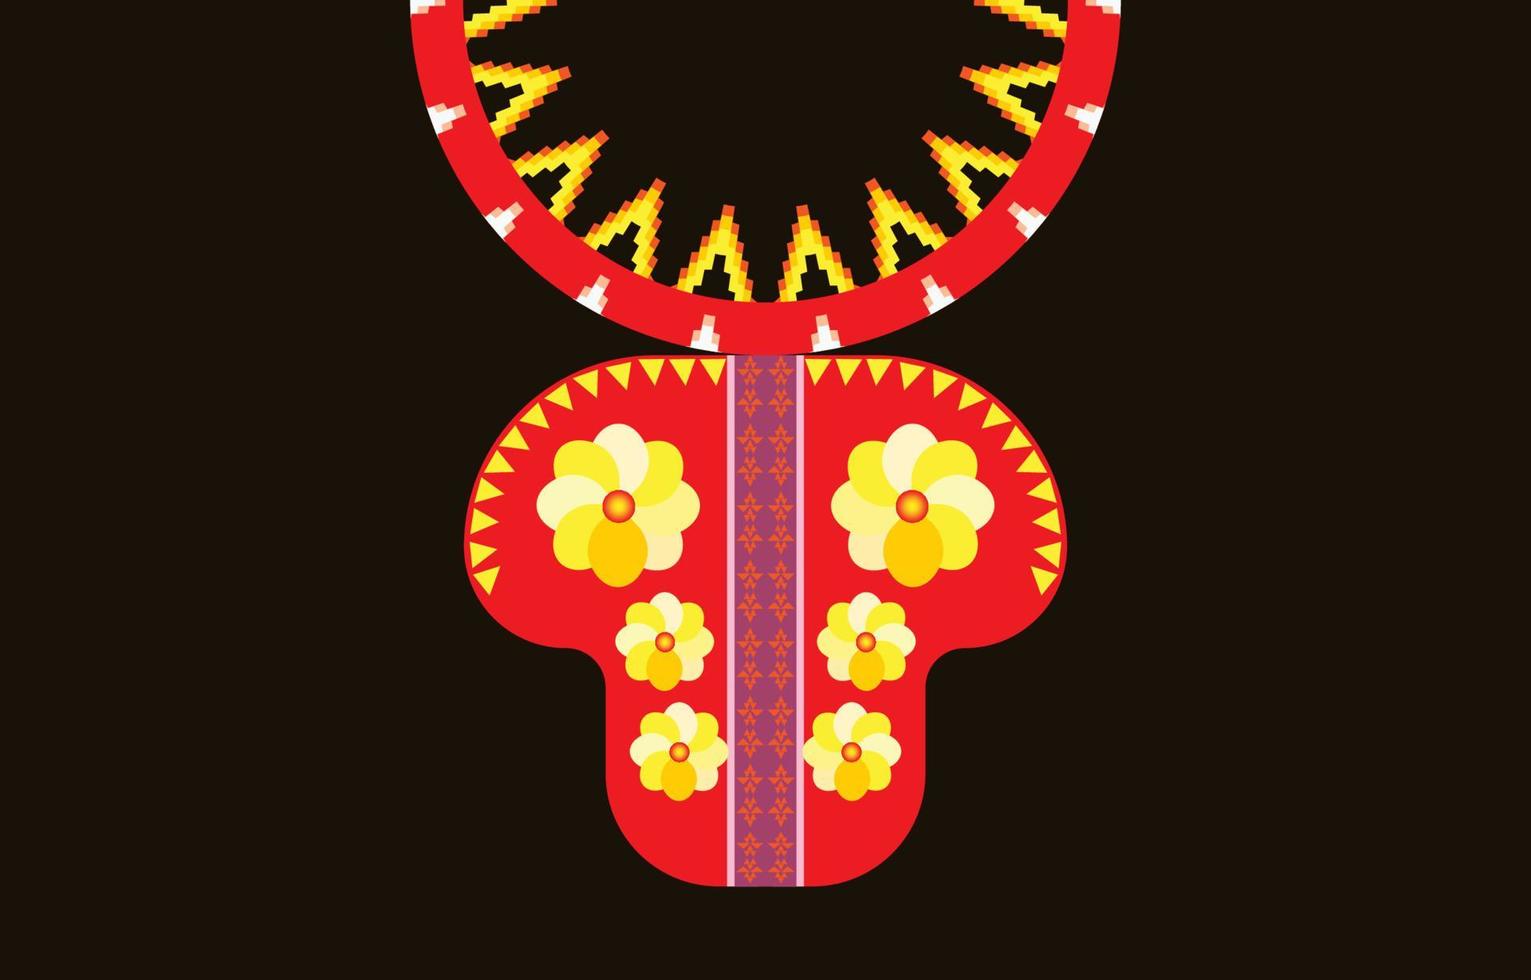 collier géométrique ethnique motif oriental traditionnel .fleur broderie design pour la mode women.background, papier peint, vêtements et emballage. vecteur